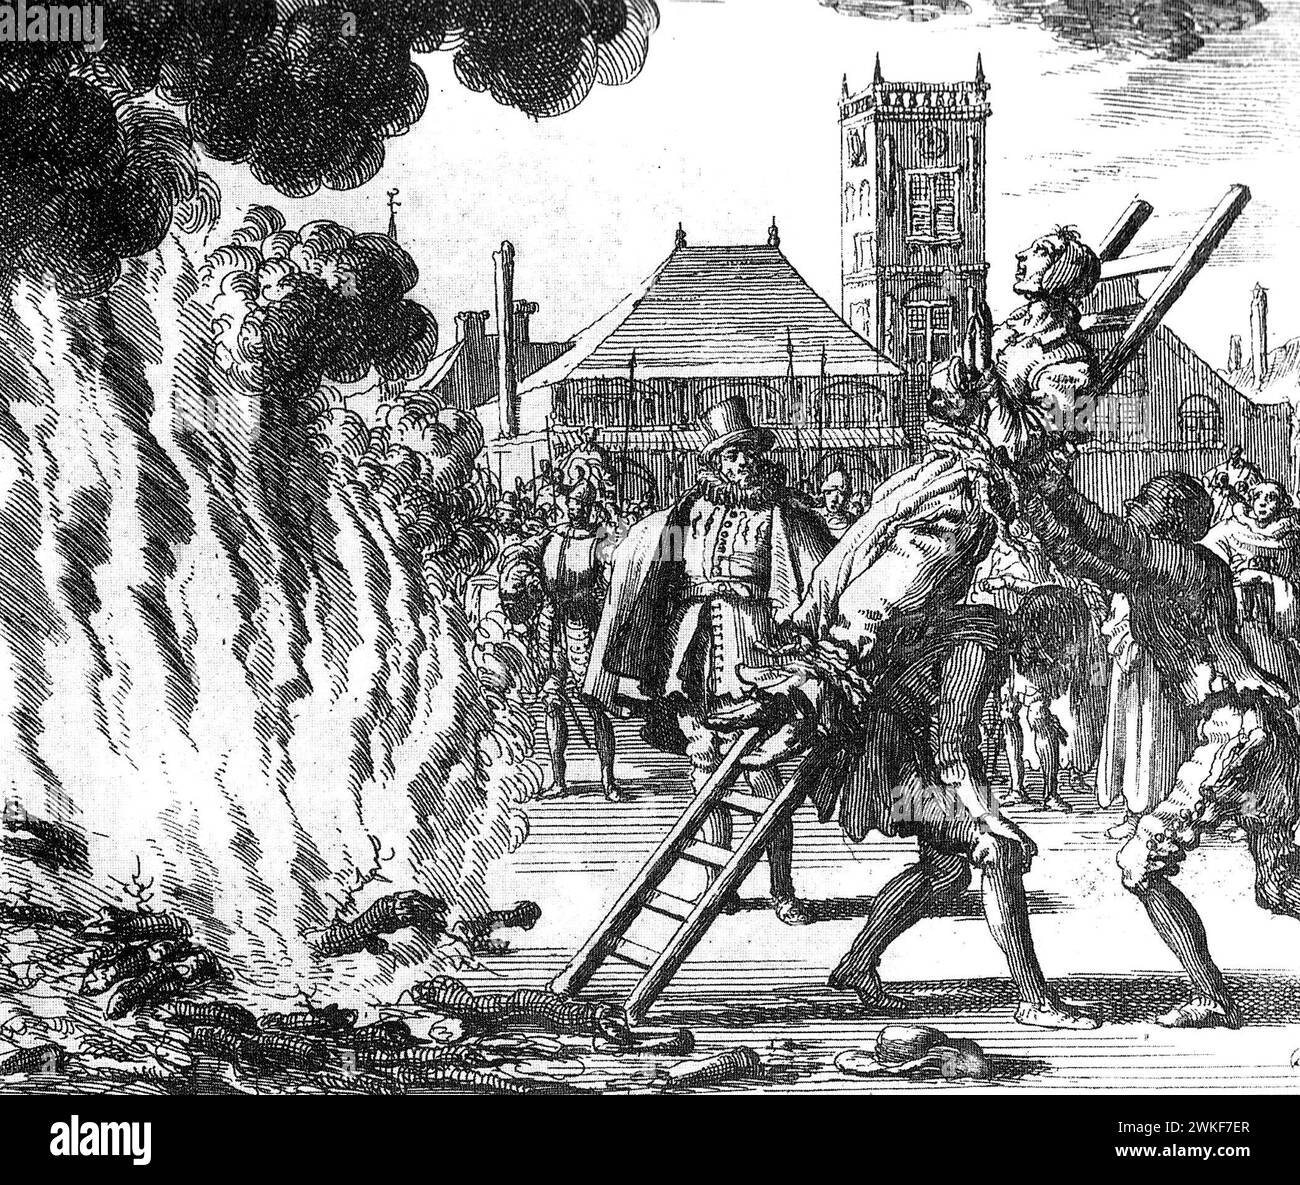 Inquisition Spnish. Anneken Hendriks, ein friesischer Mennonit, 1571 von der spanischen Inquisition verbrannt. Stich von Jan Luyken, 1685 Stockfoto